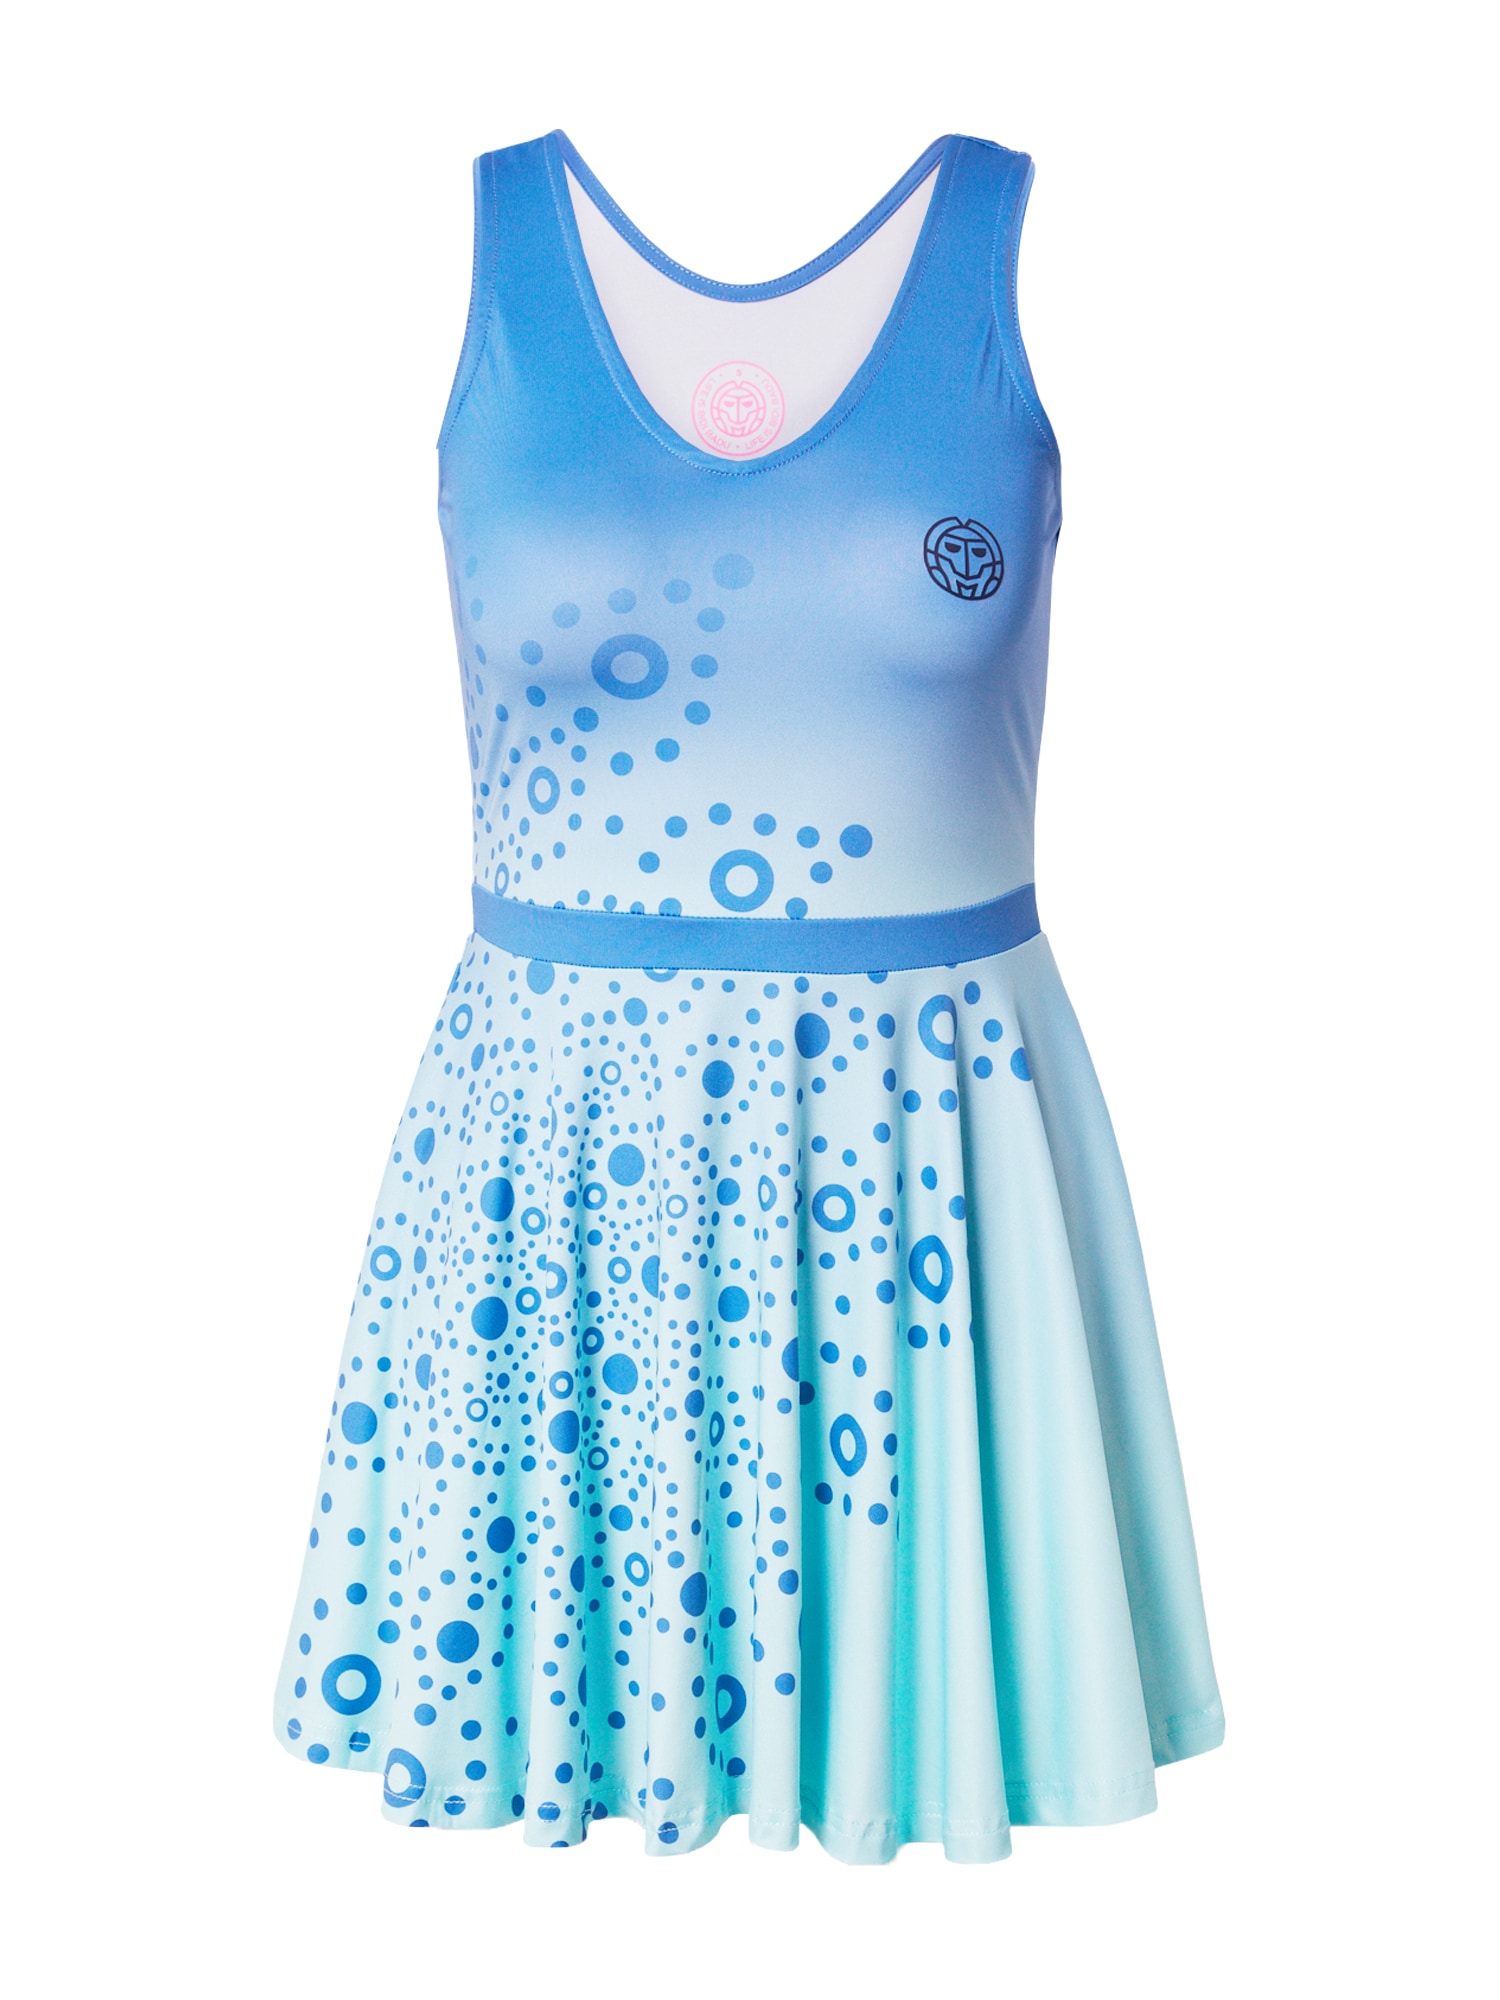 BIDI BADU Sportinė suknelė mėlyna / turkio spalva